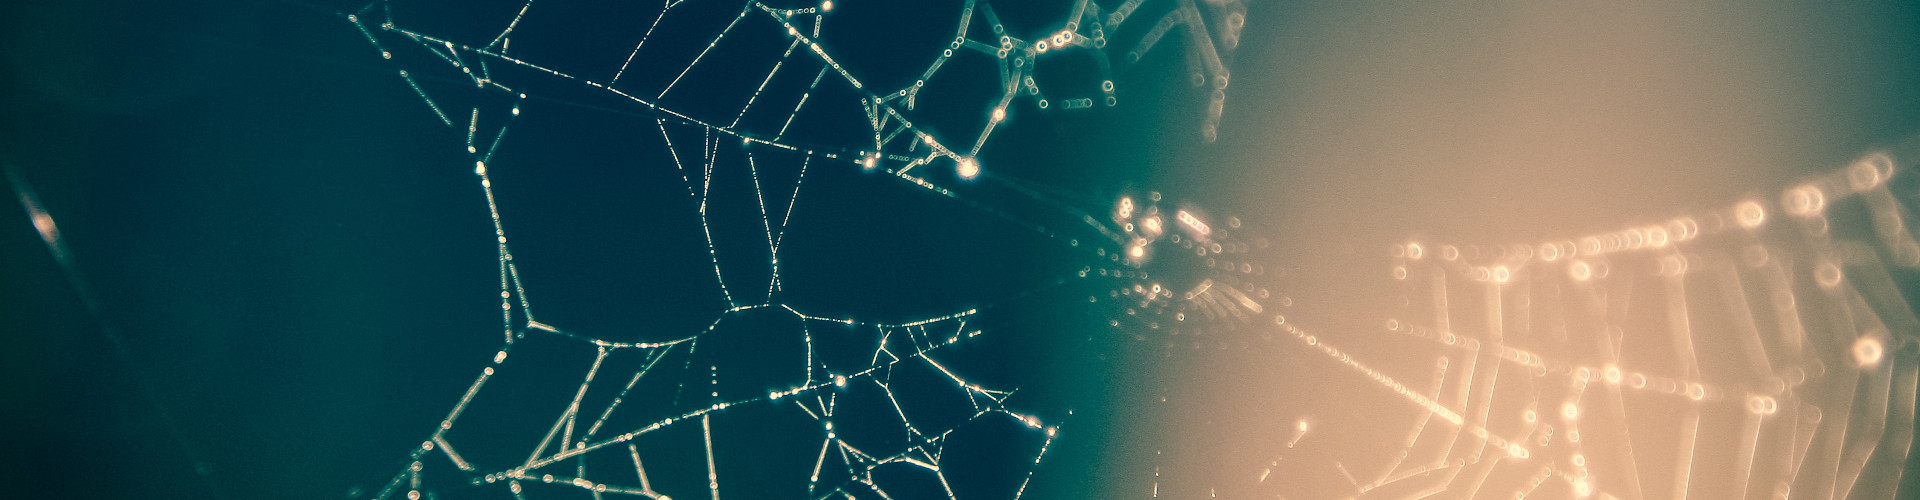 ItaCRIN_spiderweb